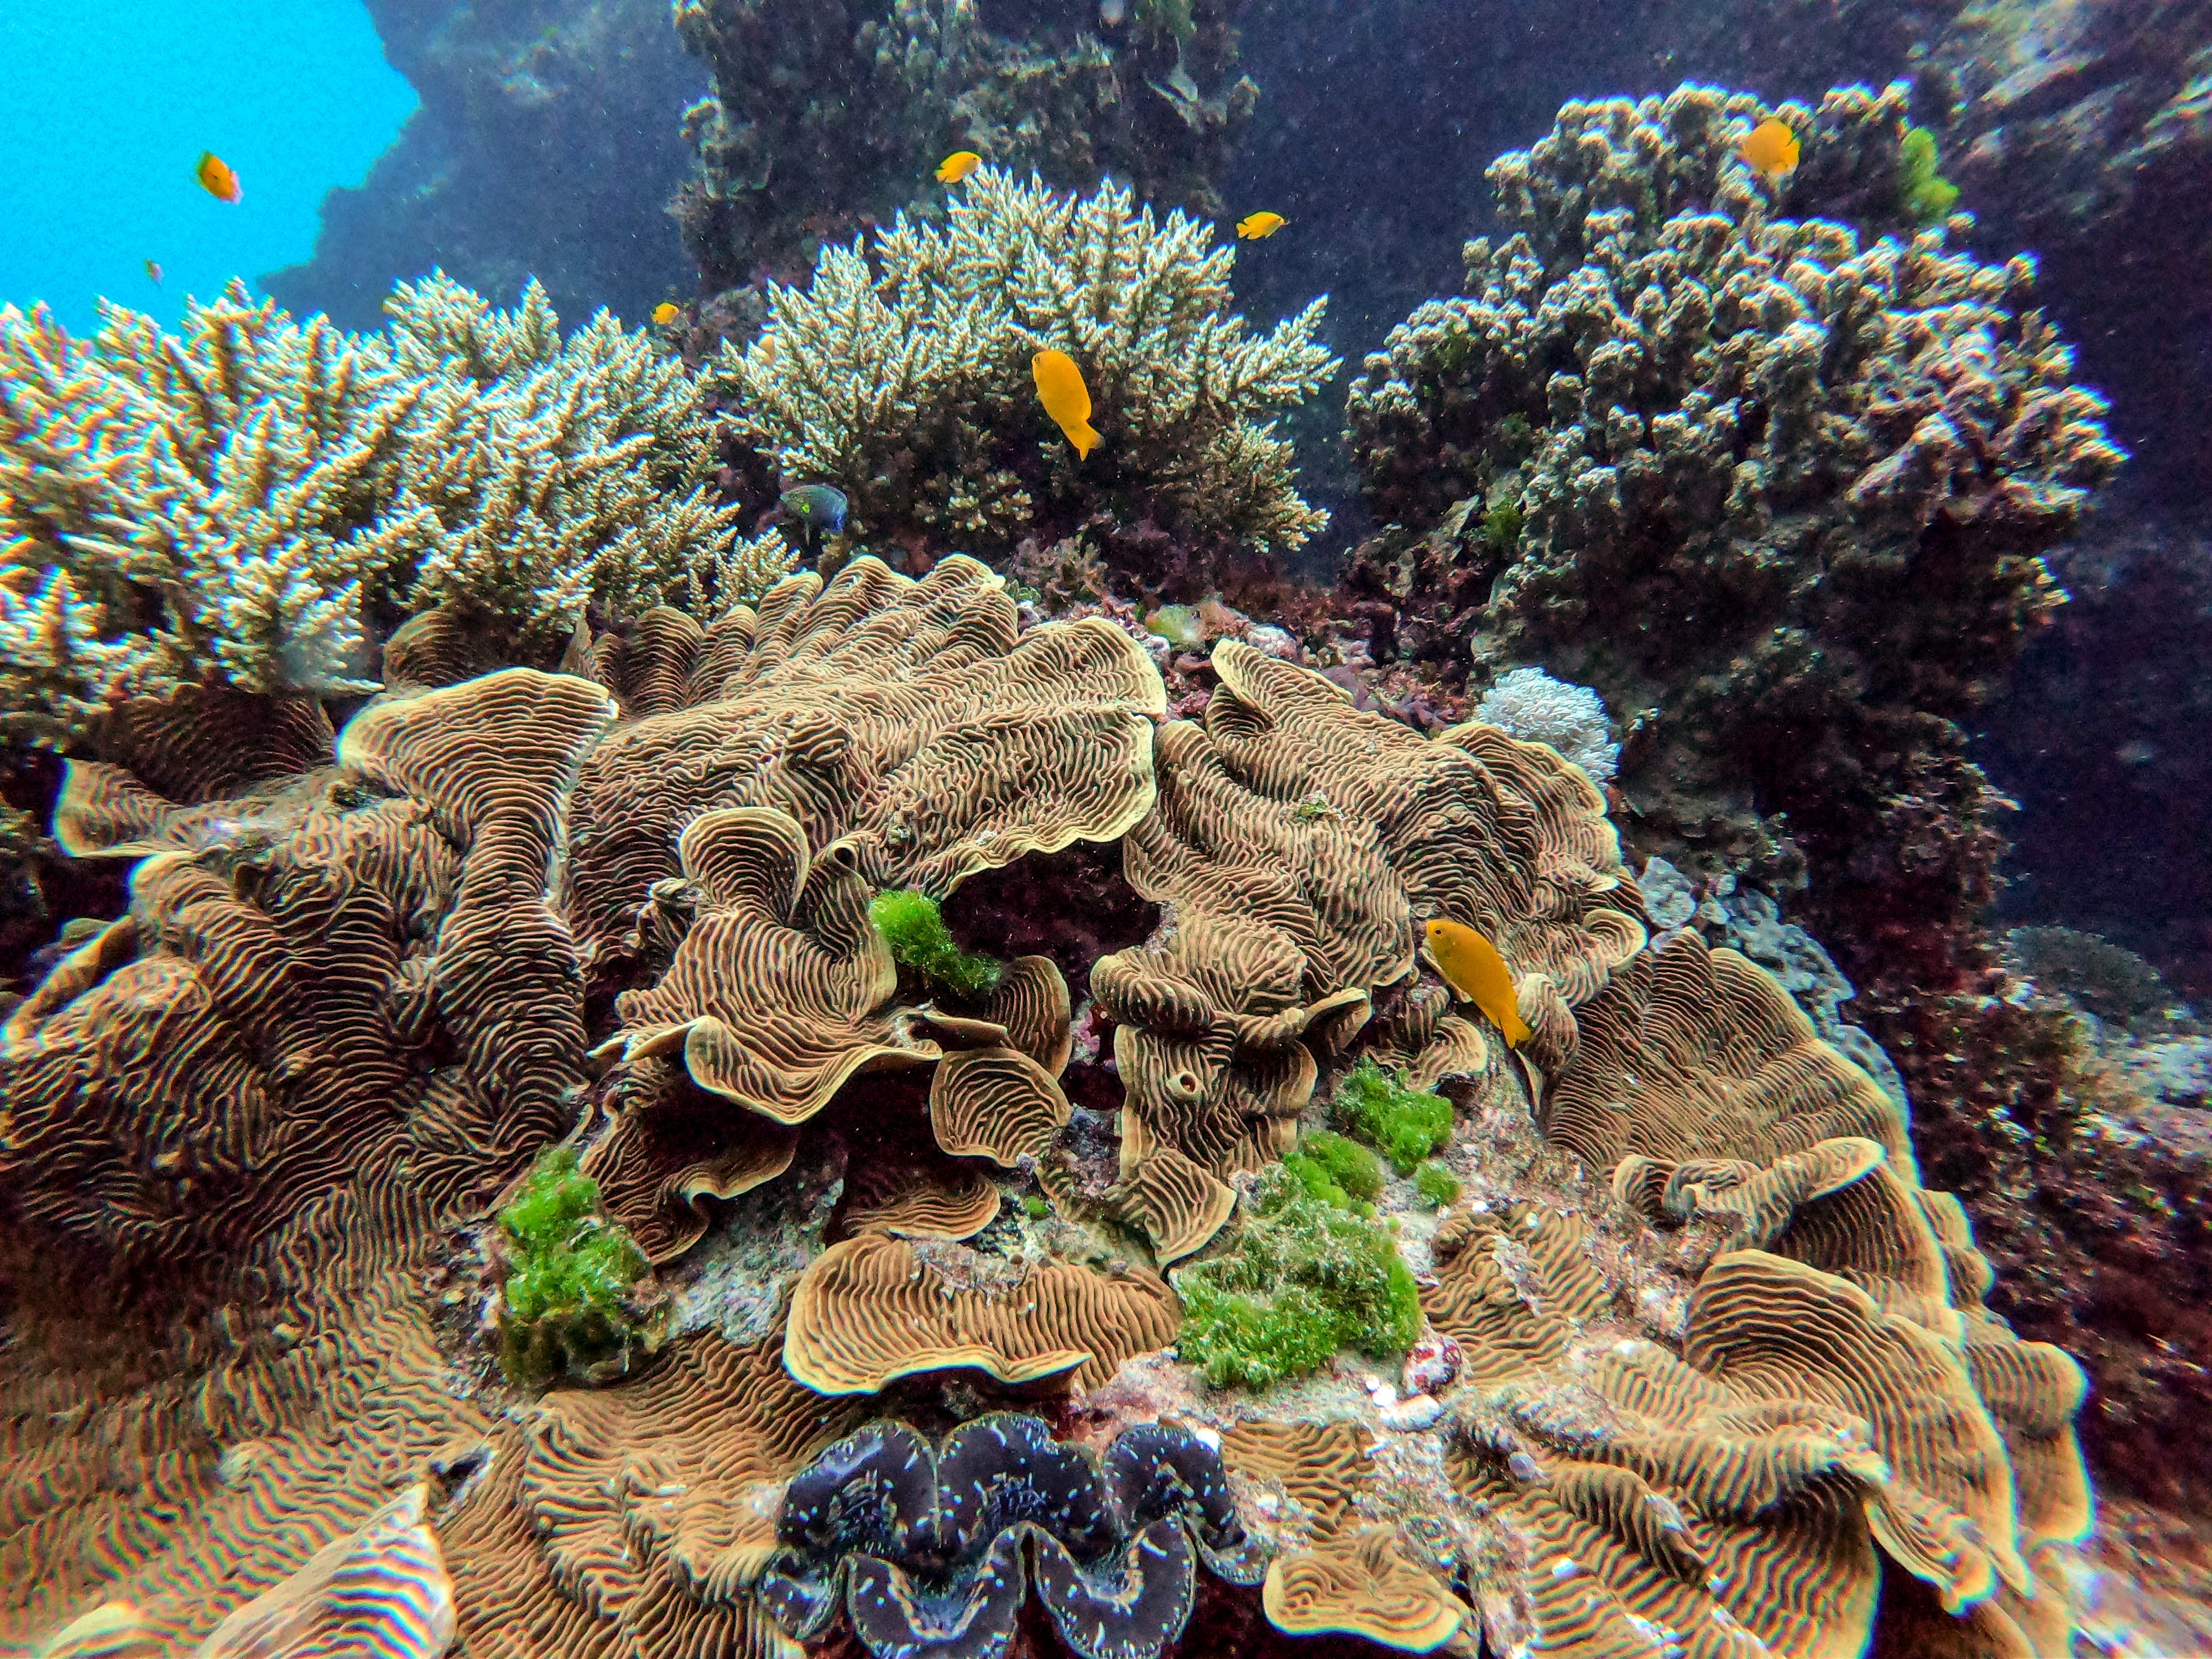 Australia Great barrier reef